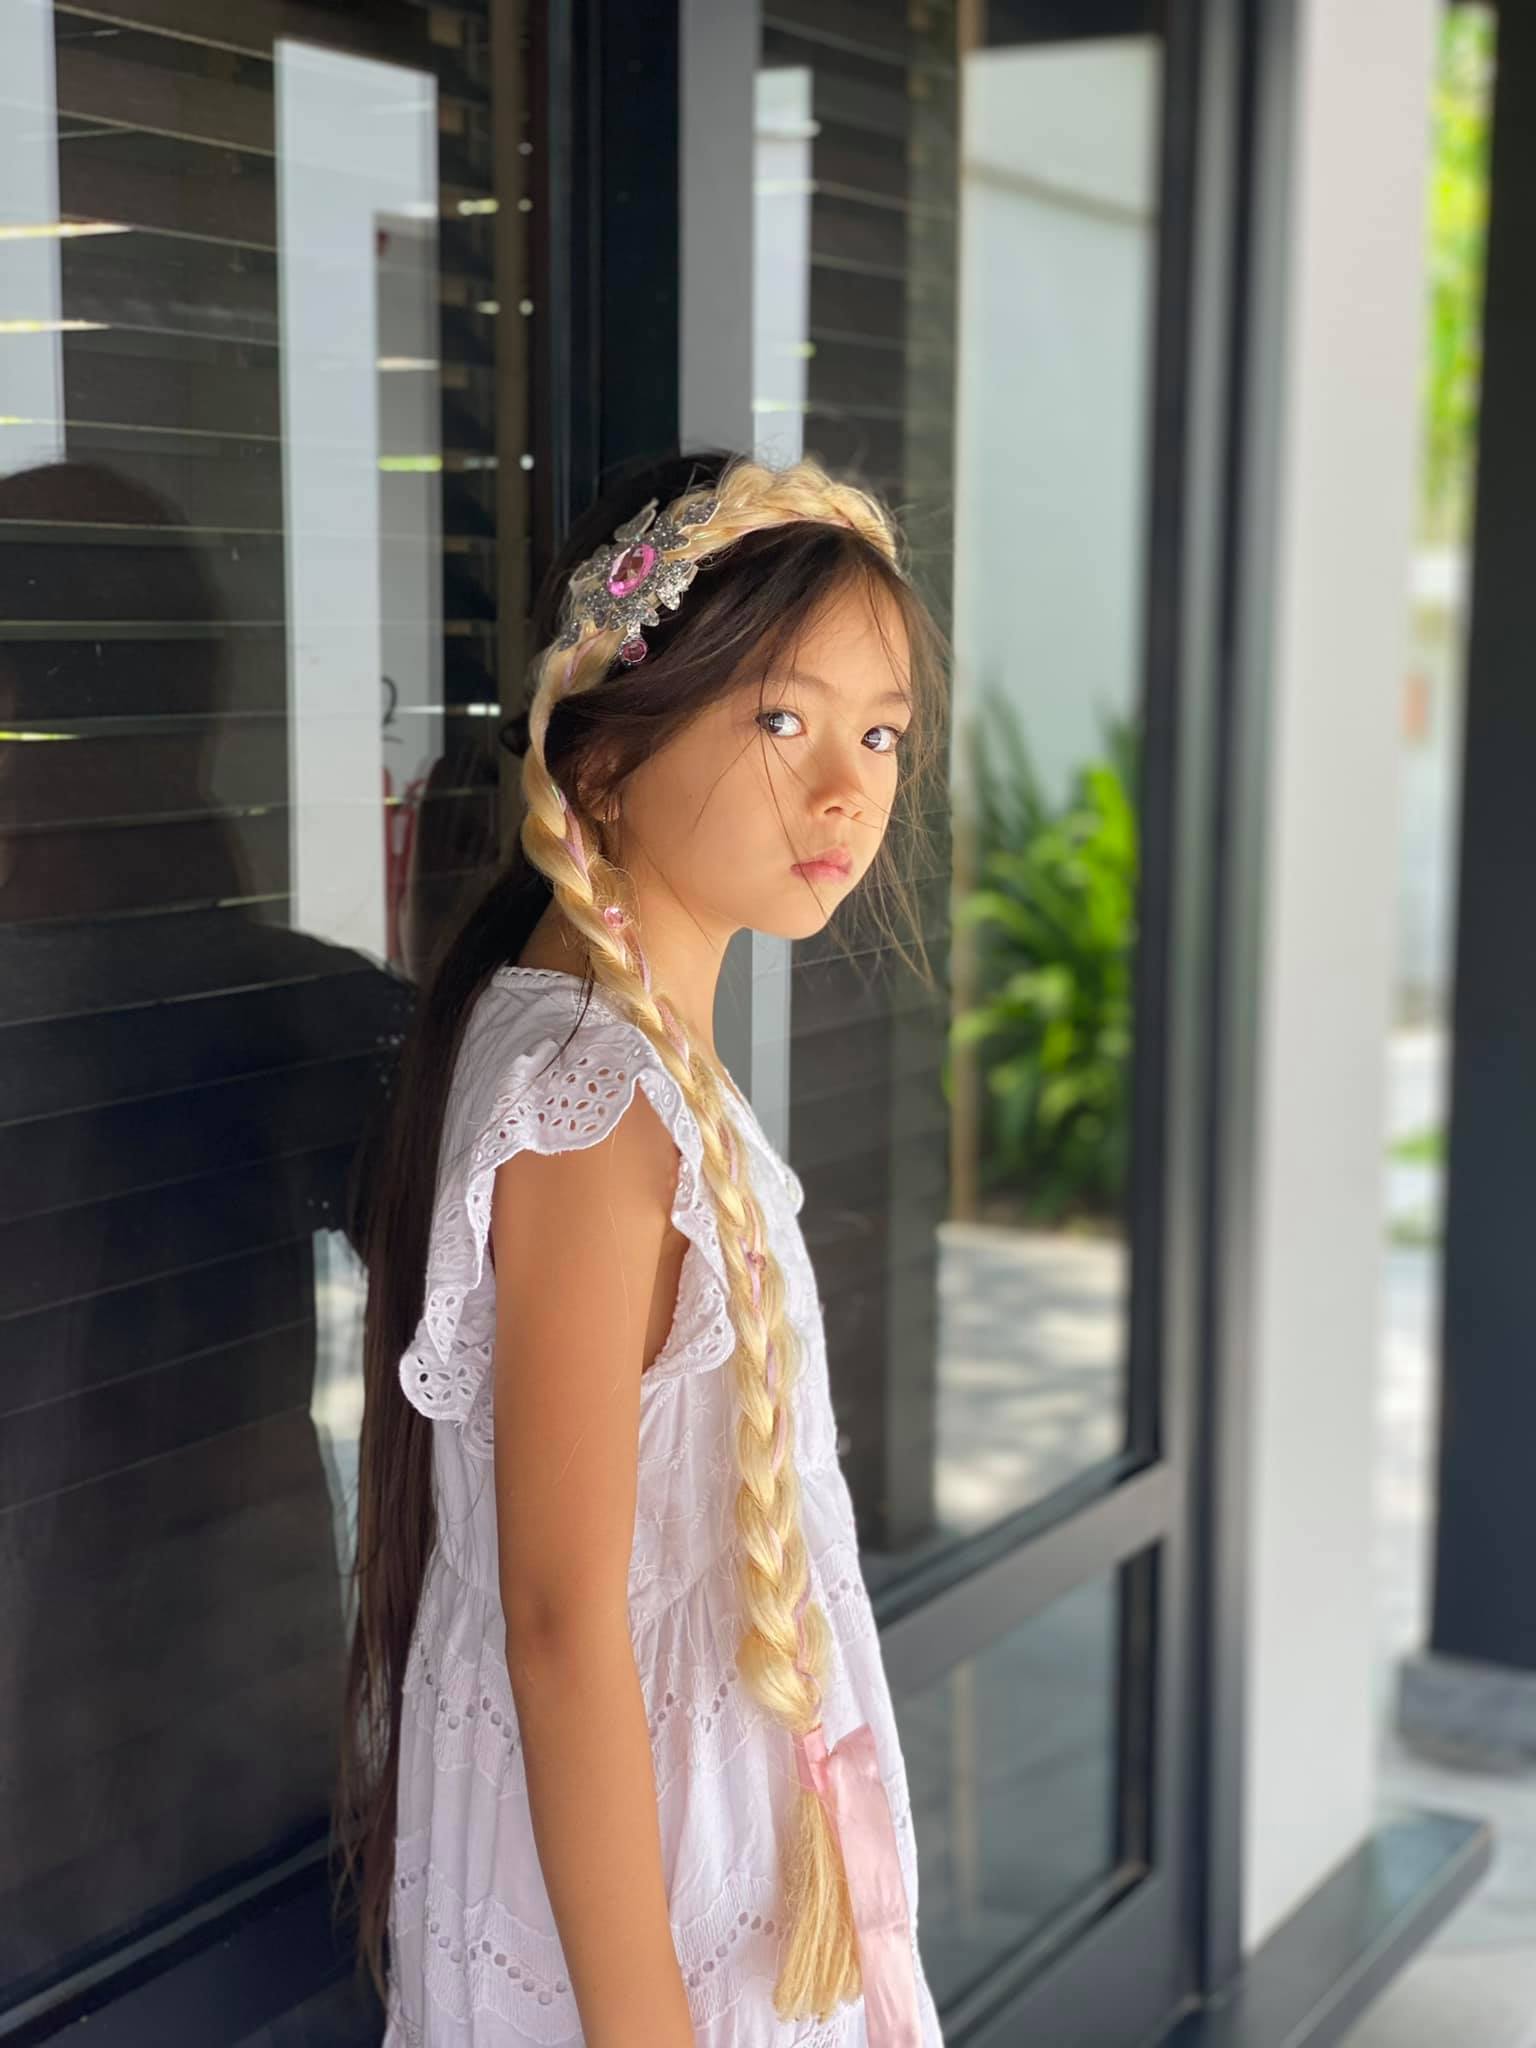 Đoan Trang có cô con gái mới 7 tuổi nhưng thần thái cực đỉnh, mỉm cười nhẹ 1 phát đã giật luôn spotlight của bố mẹ - Ảnh 7.